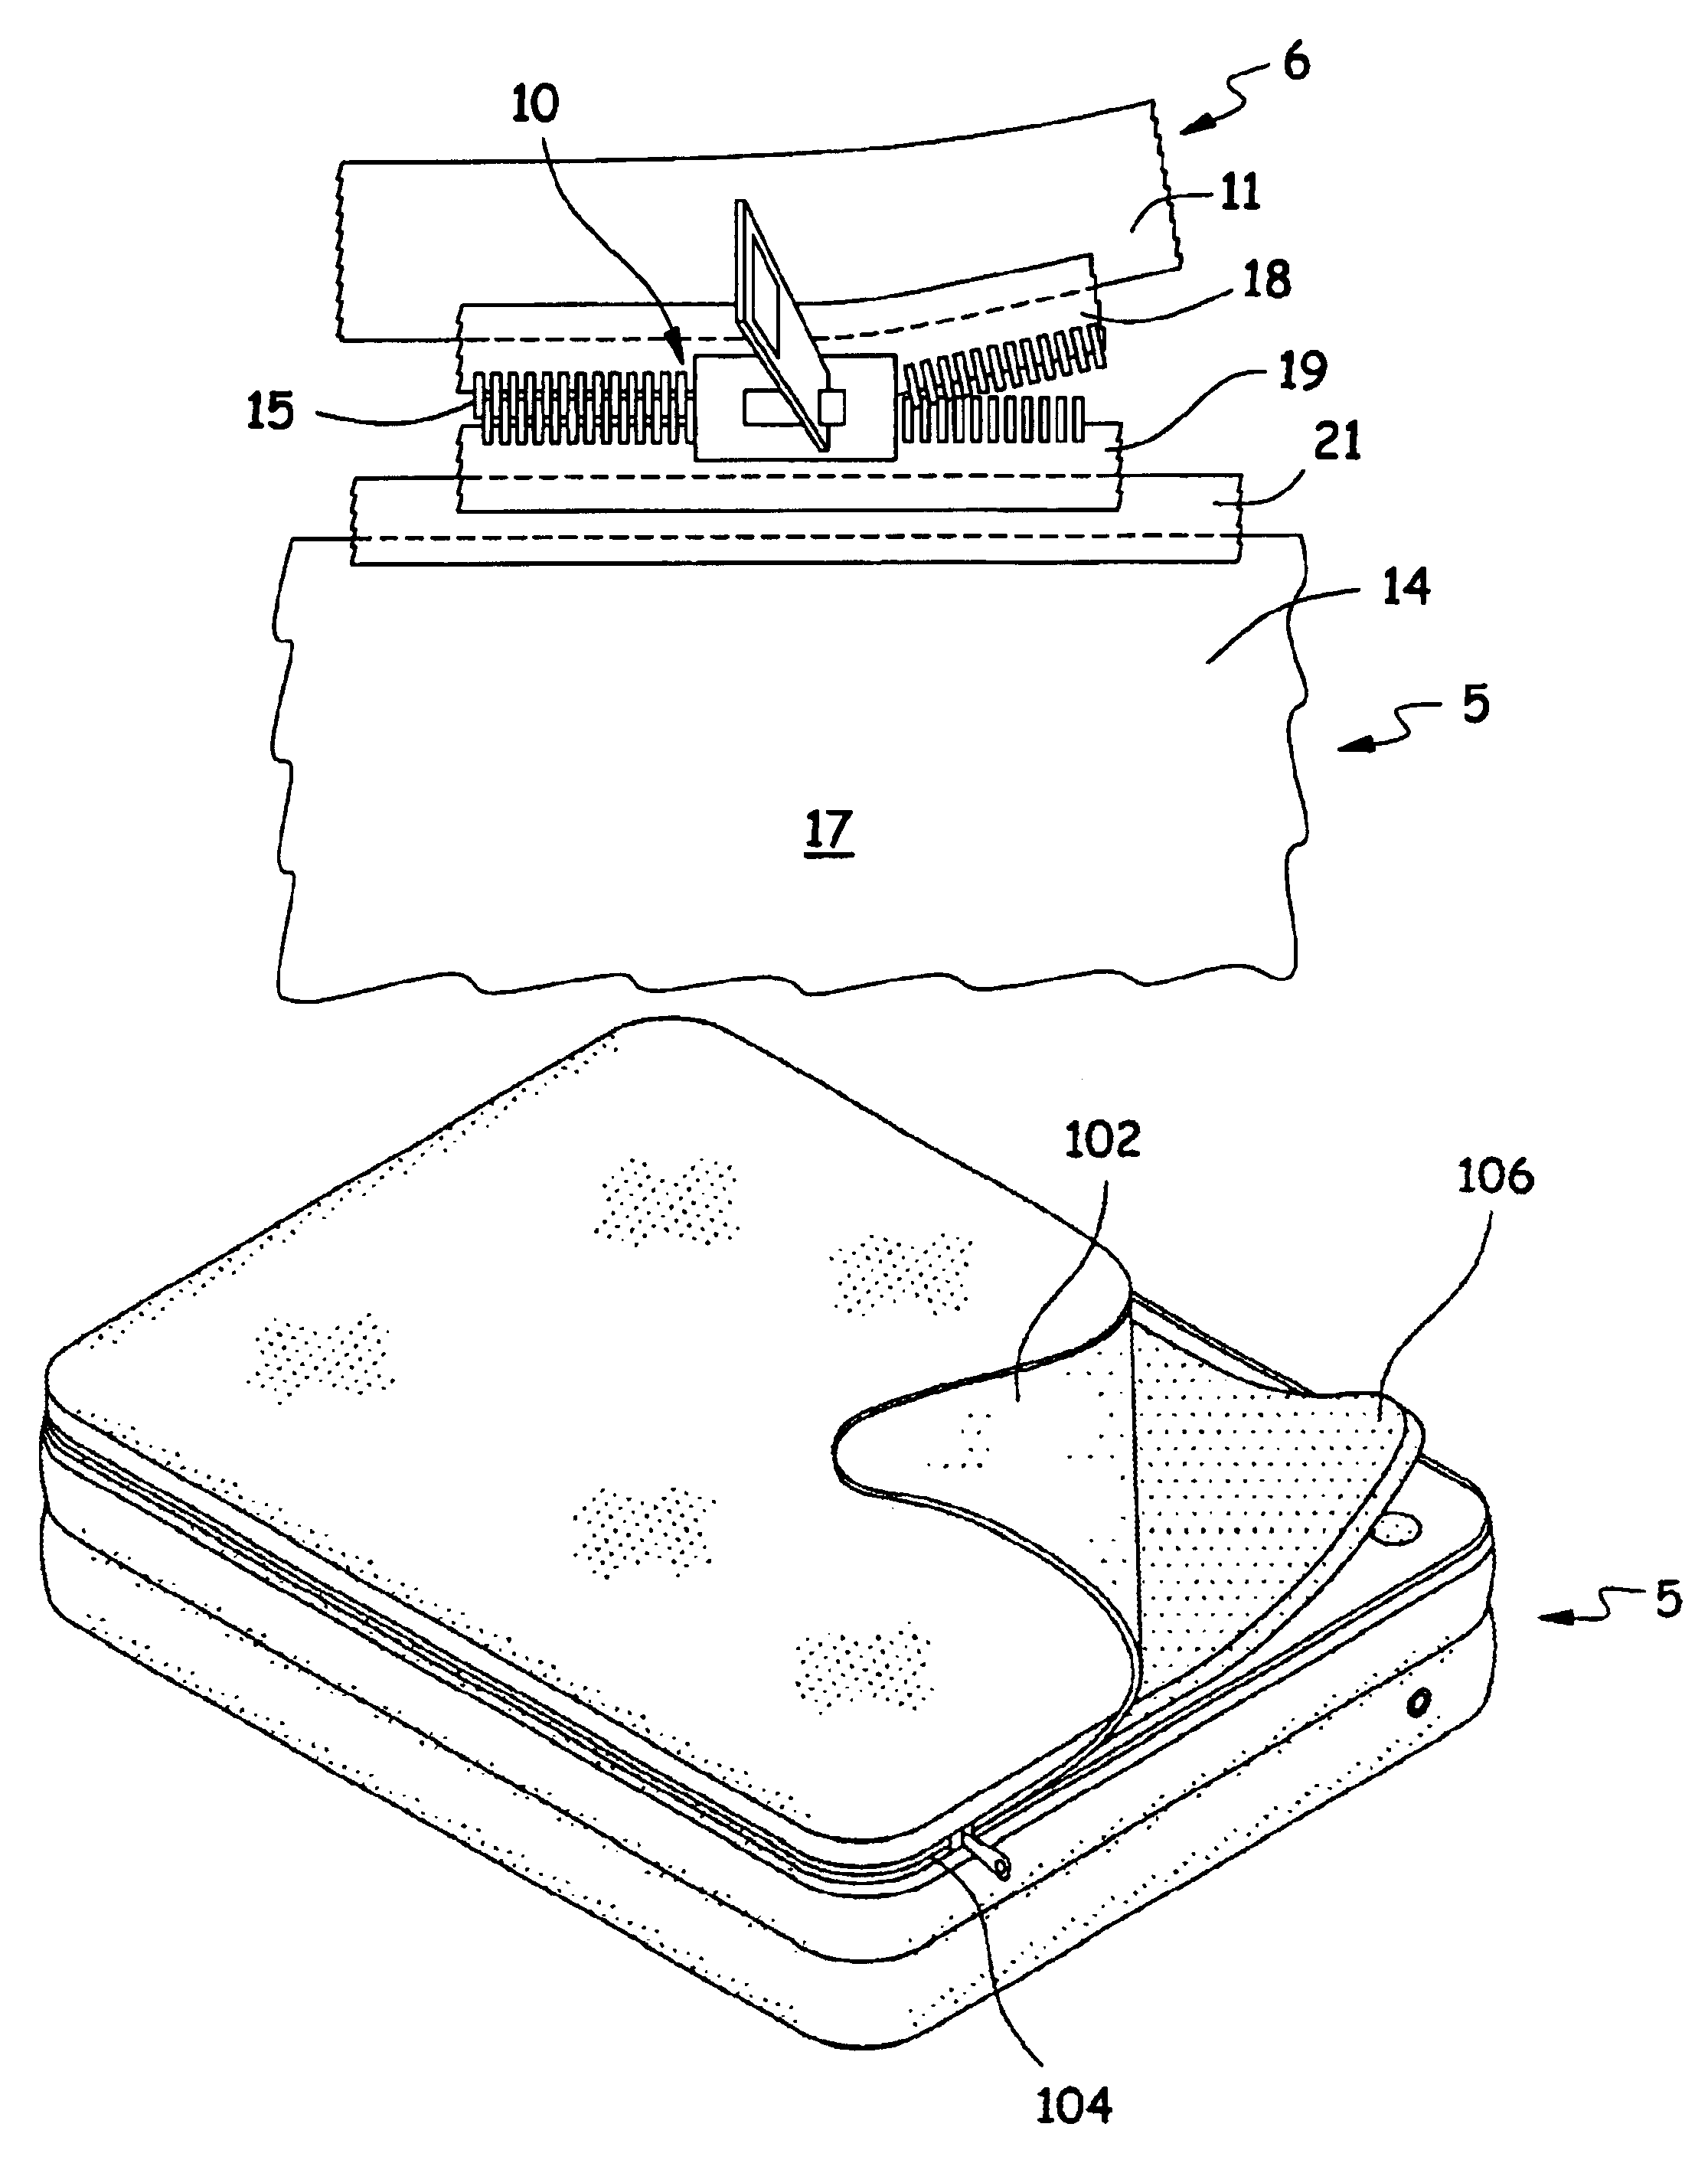 Air mattress with pillow top